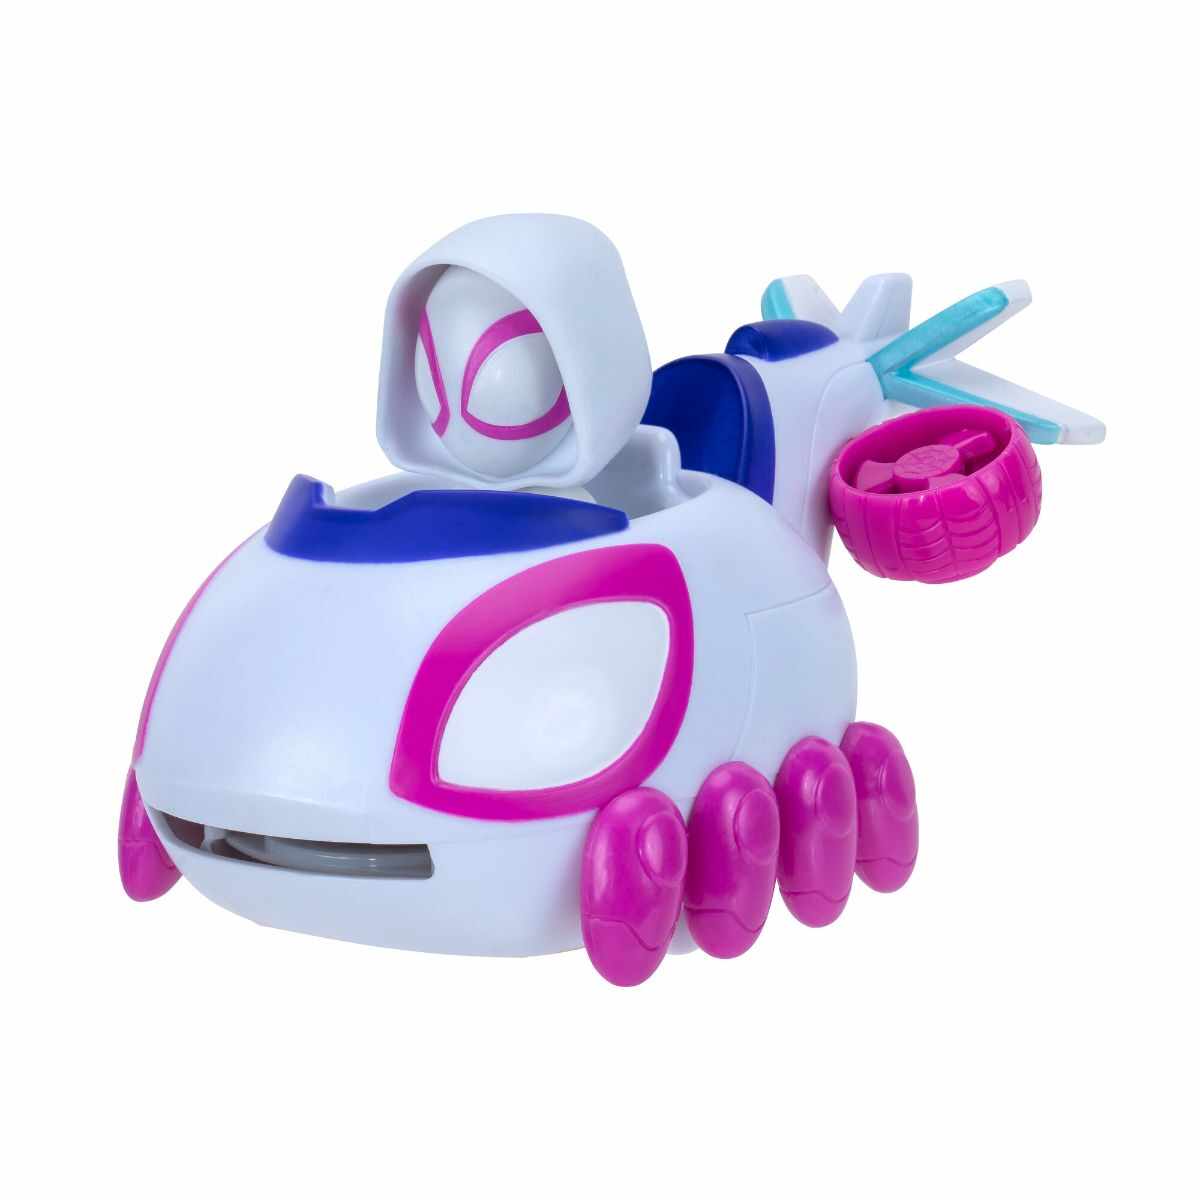 Figurina Spidey, cu masinuta, Little Vehicle, SNF0010